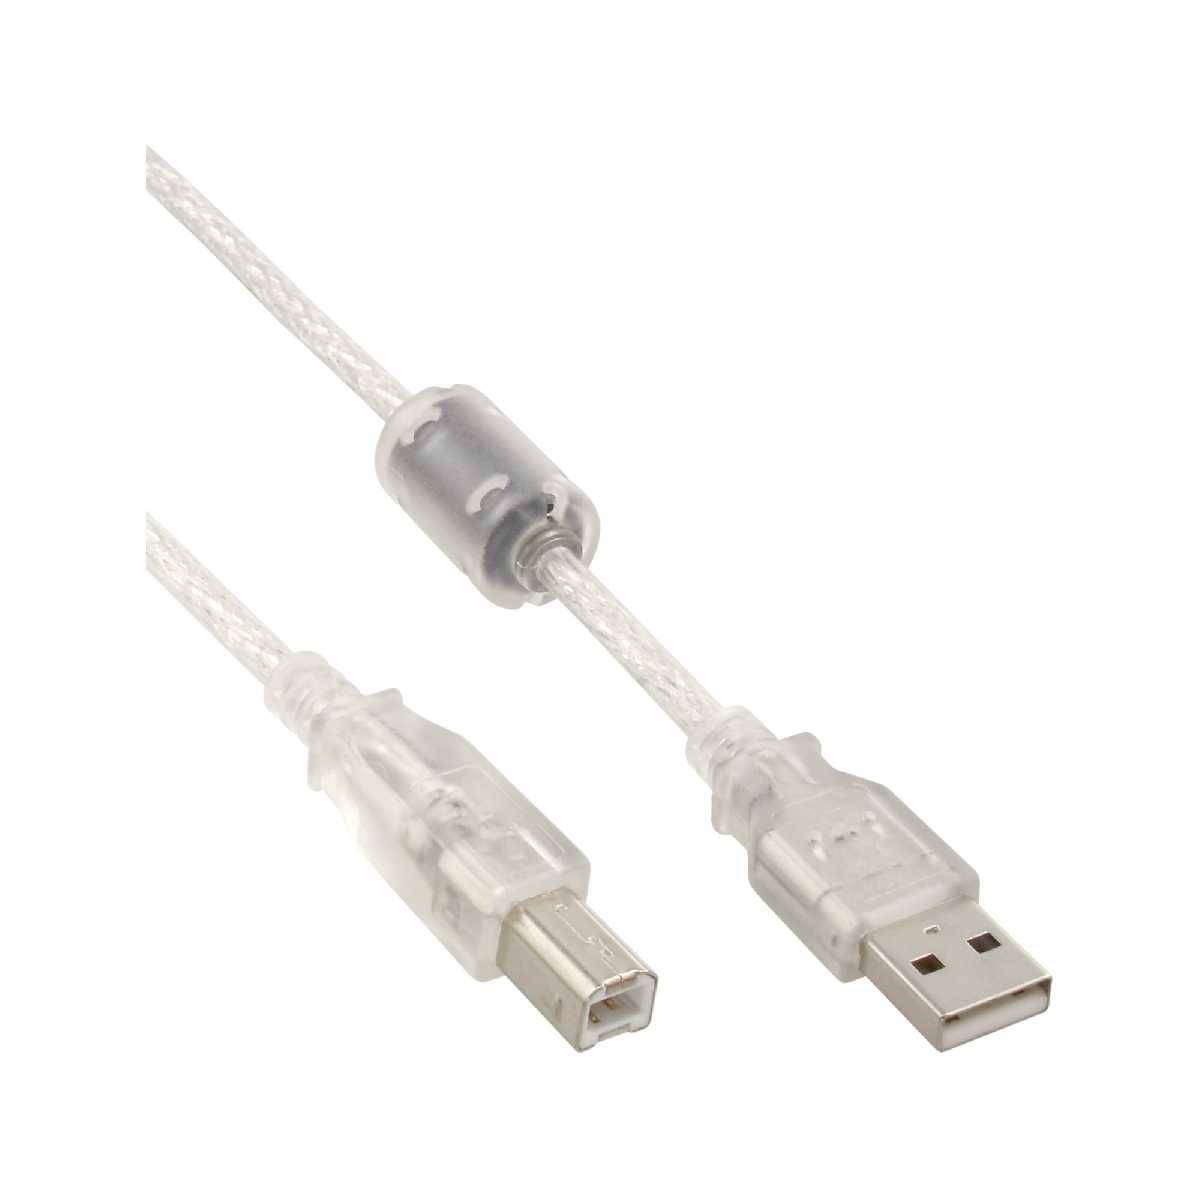 USB2 USB 2.0 Kabel A an B transparent mit Ferritkern 2m